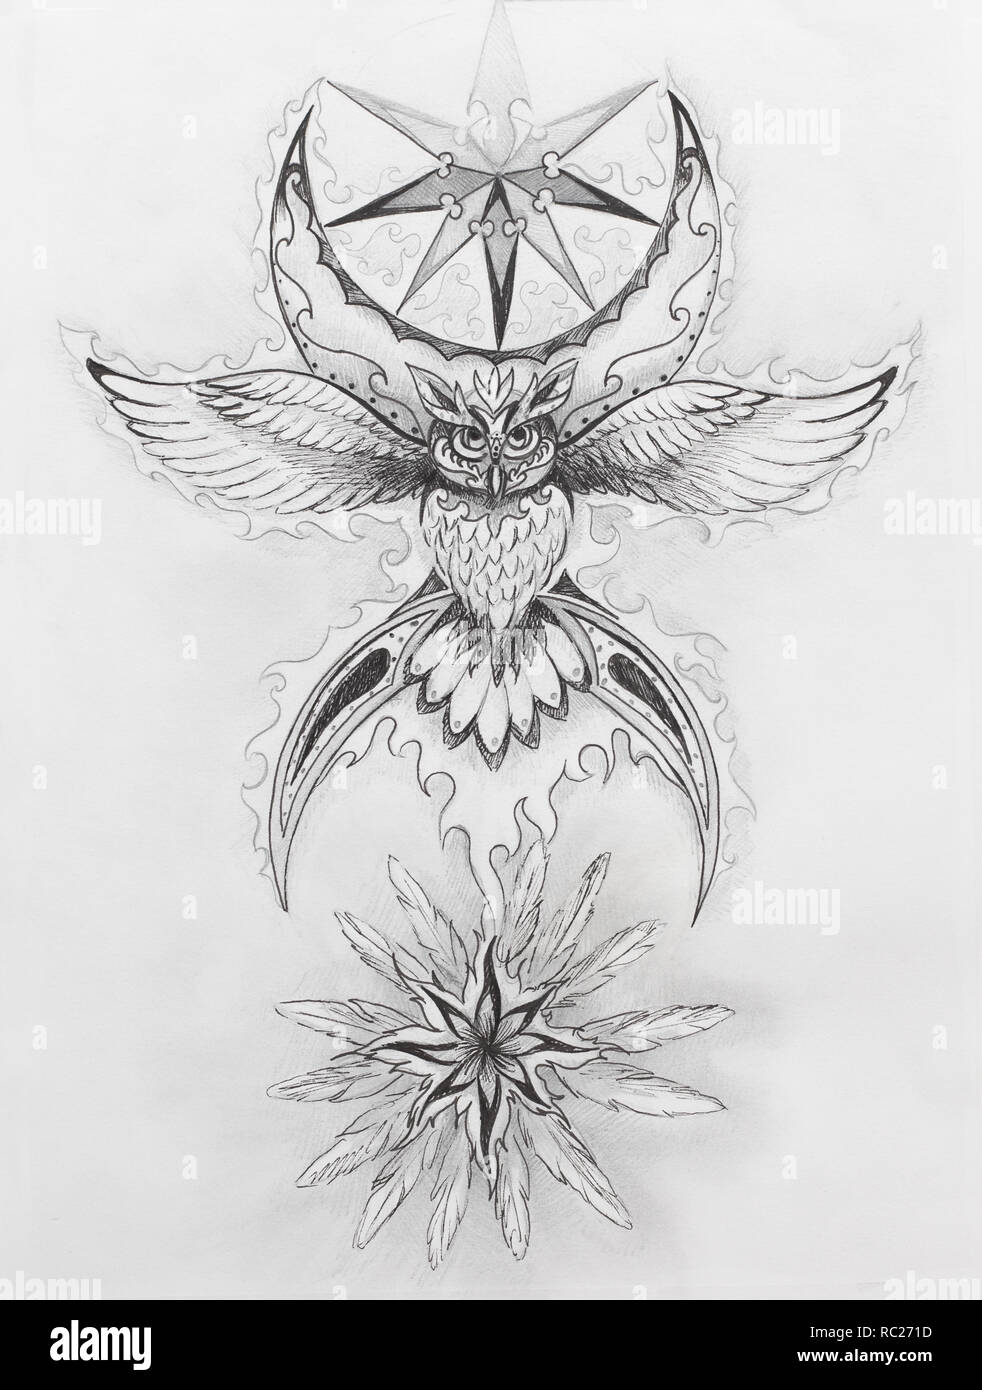 Dessin d'ornement de l'owl esprit avec symbole de lune et de plumes. Banque D'Images